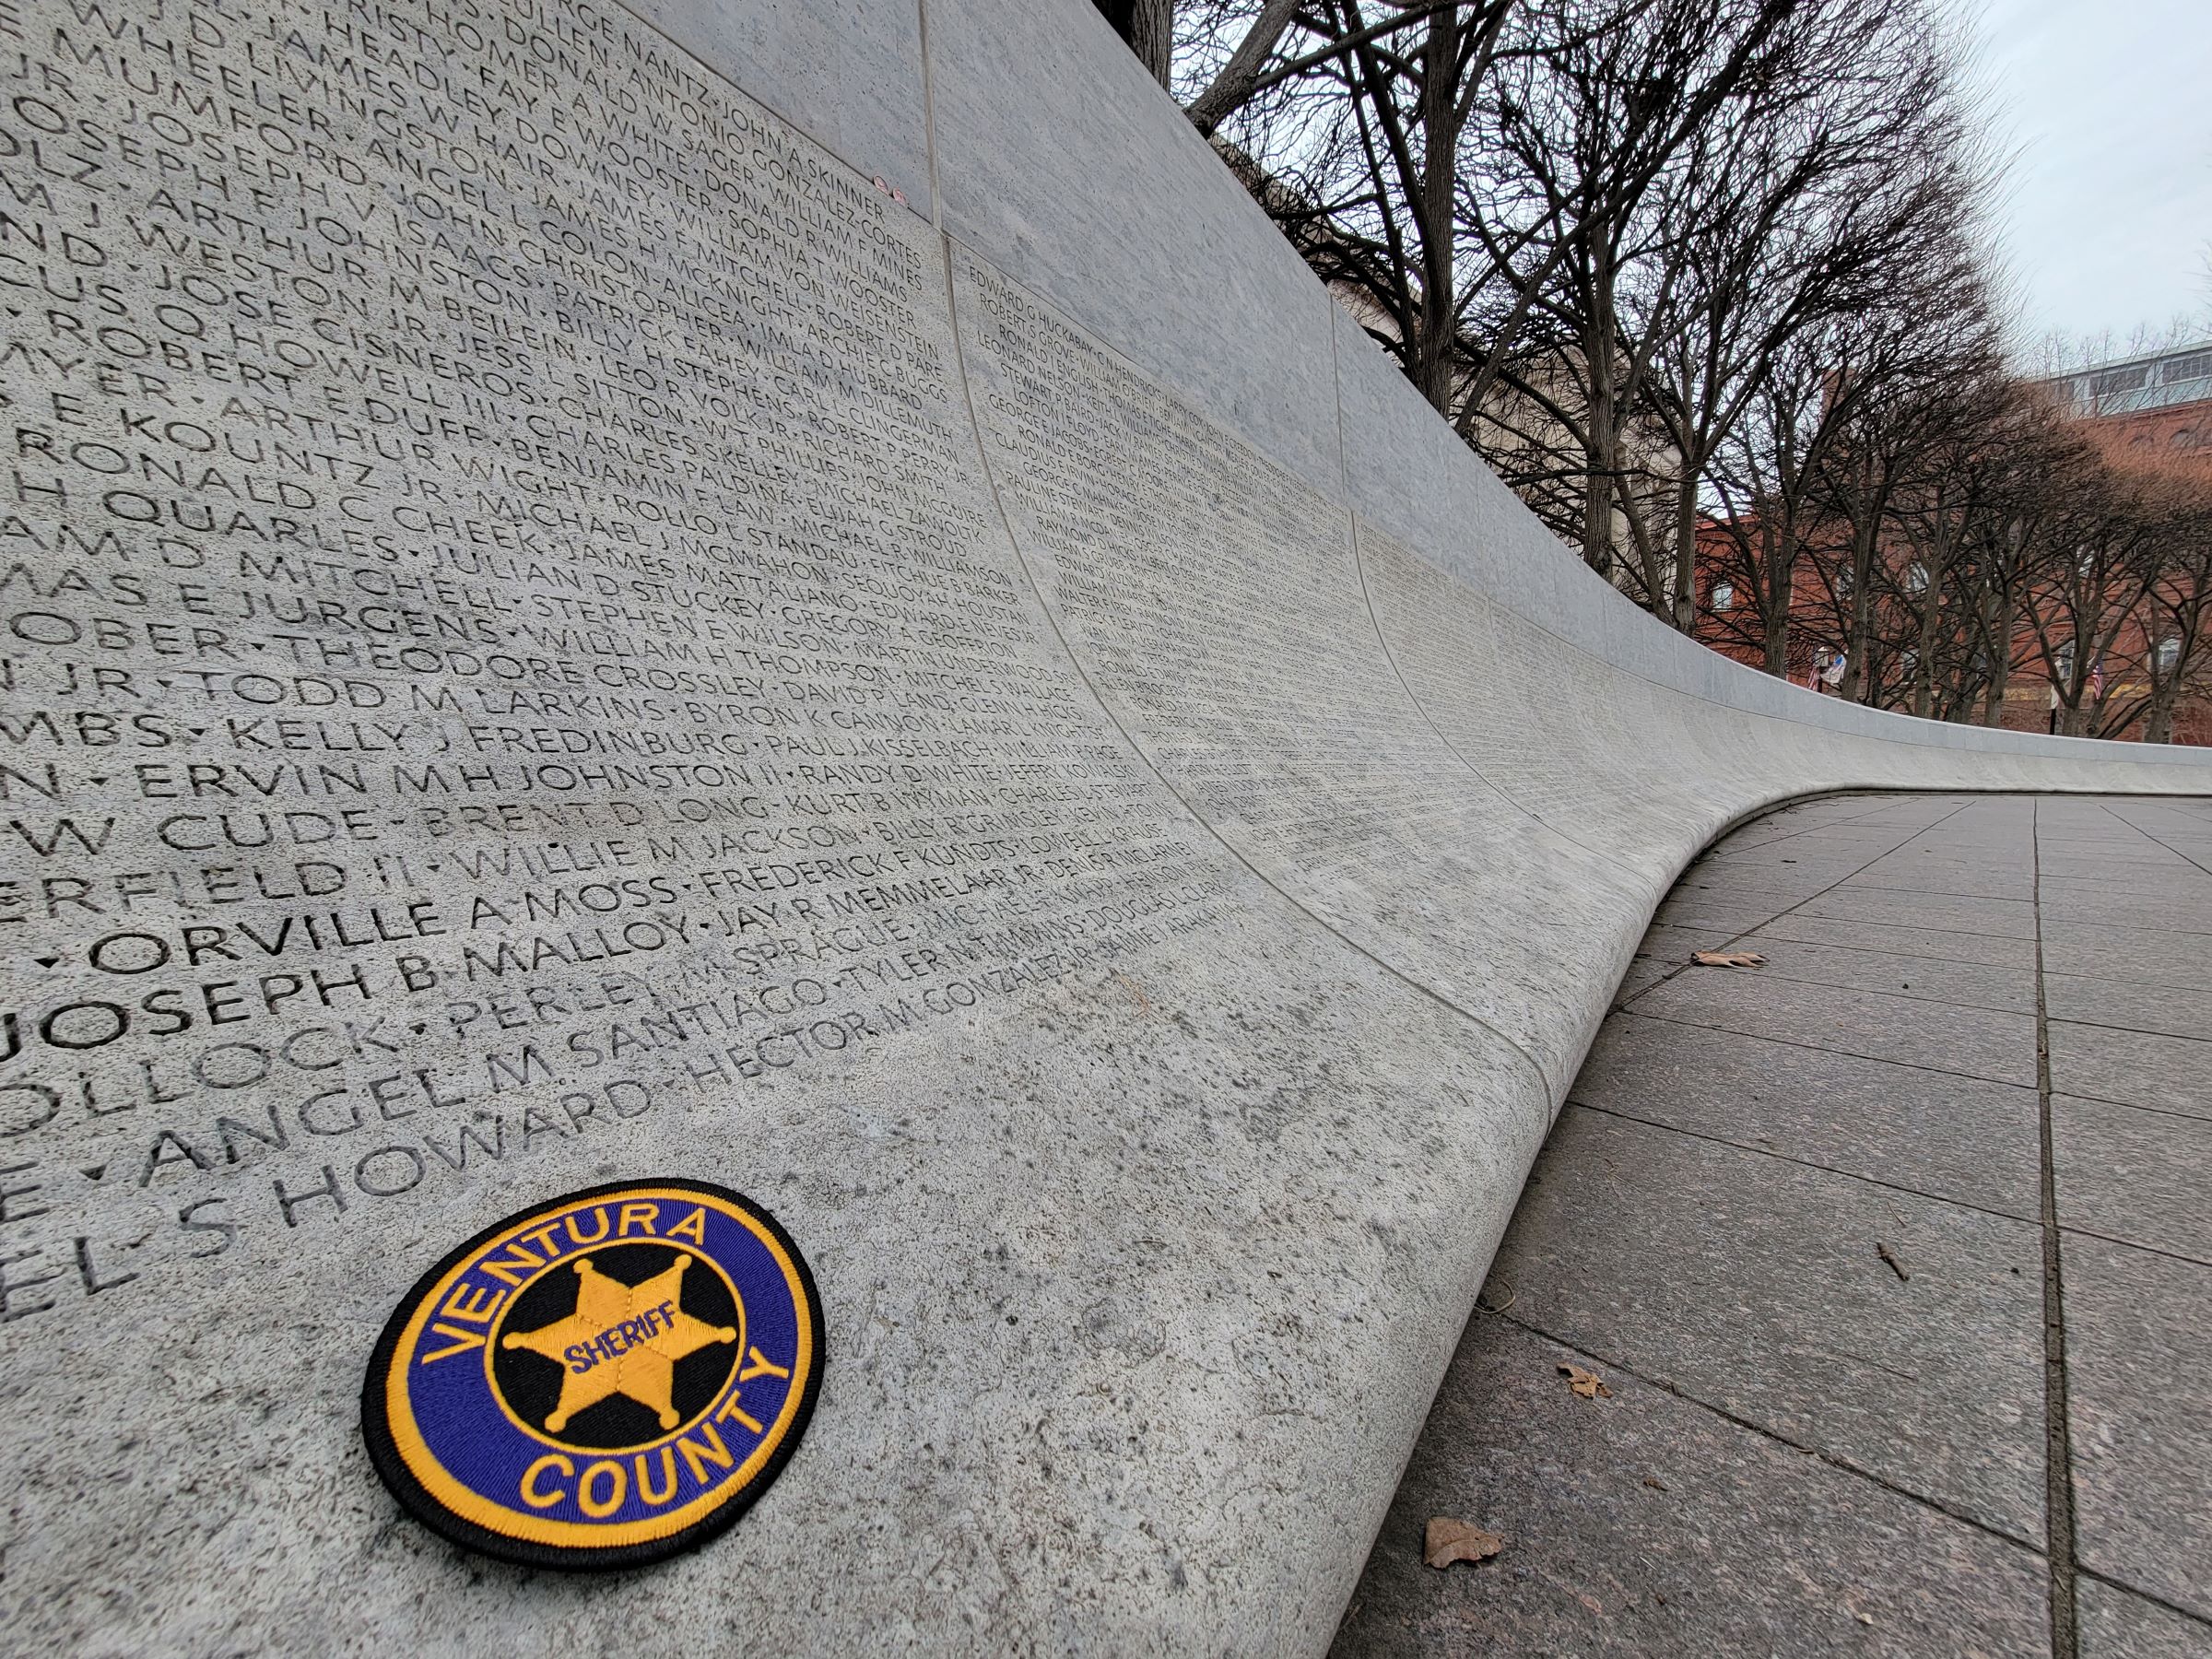 펜쿼터(Penn Quarter)의 동상들과 해군 기념물 및 법집행(Law Enforcement) 박물관과 순직자 추모광장